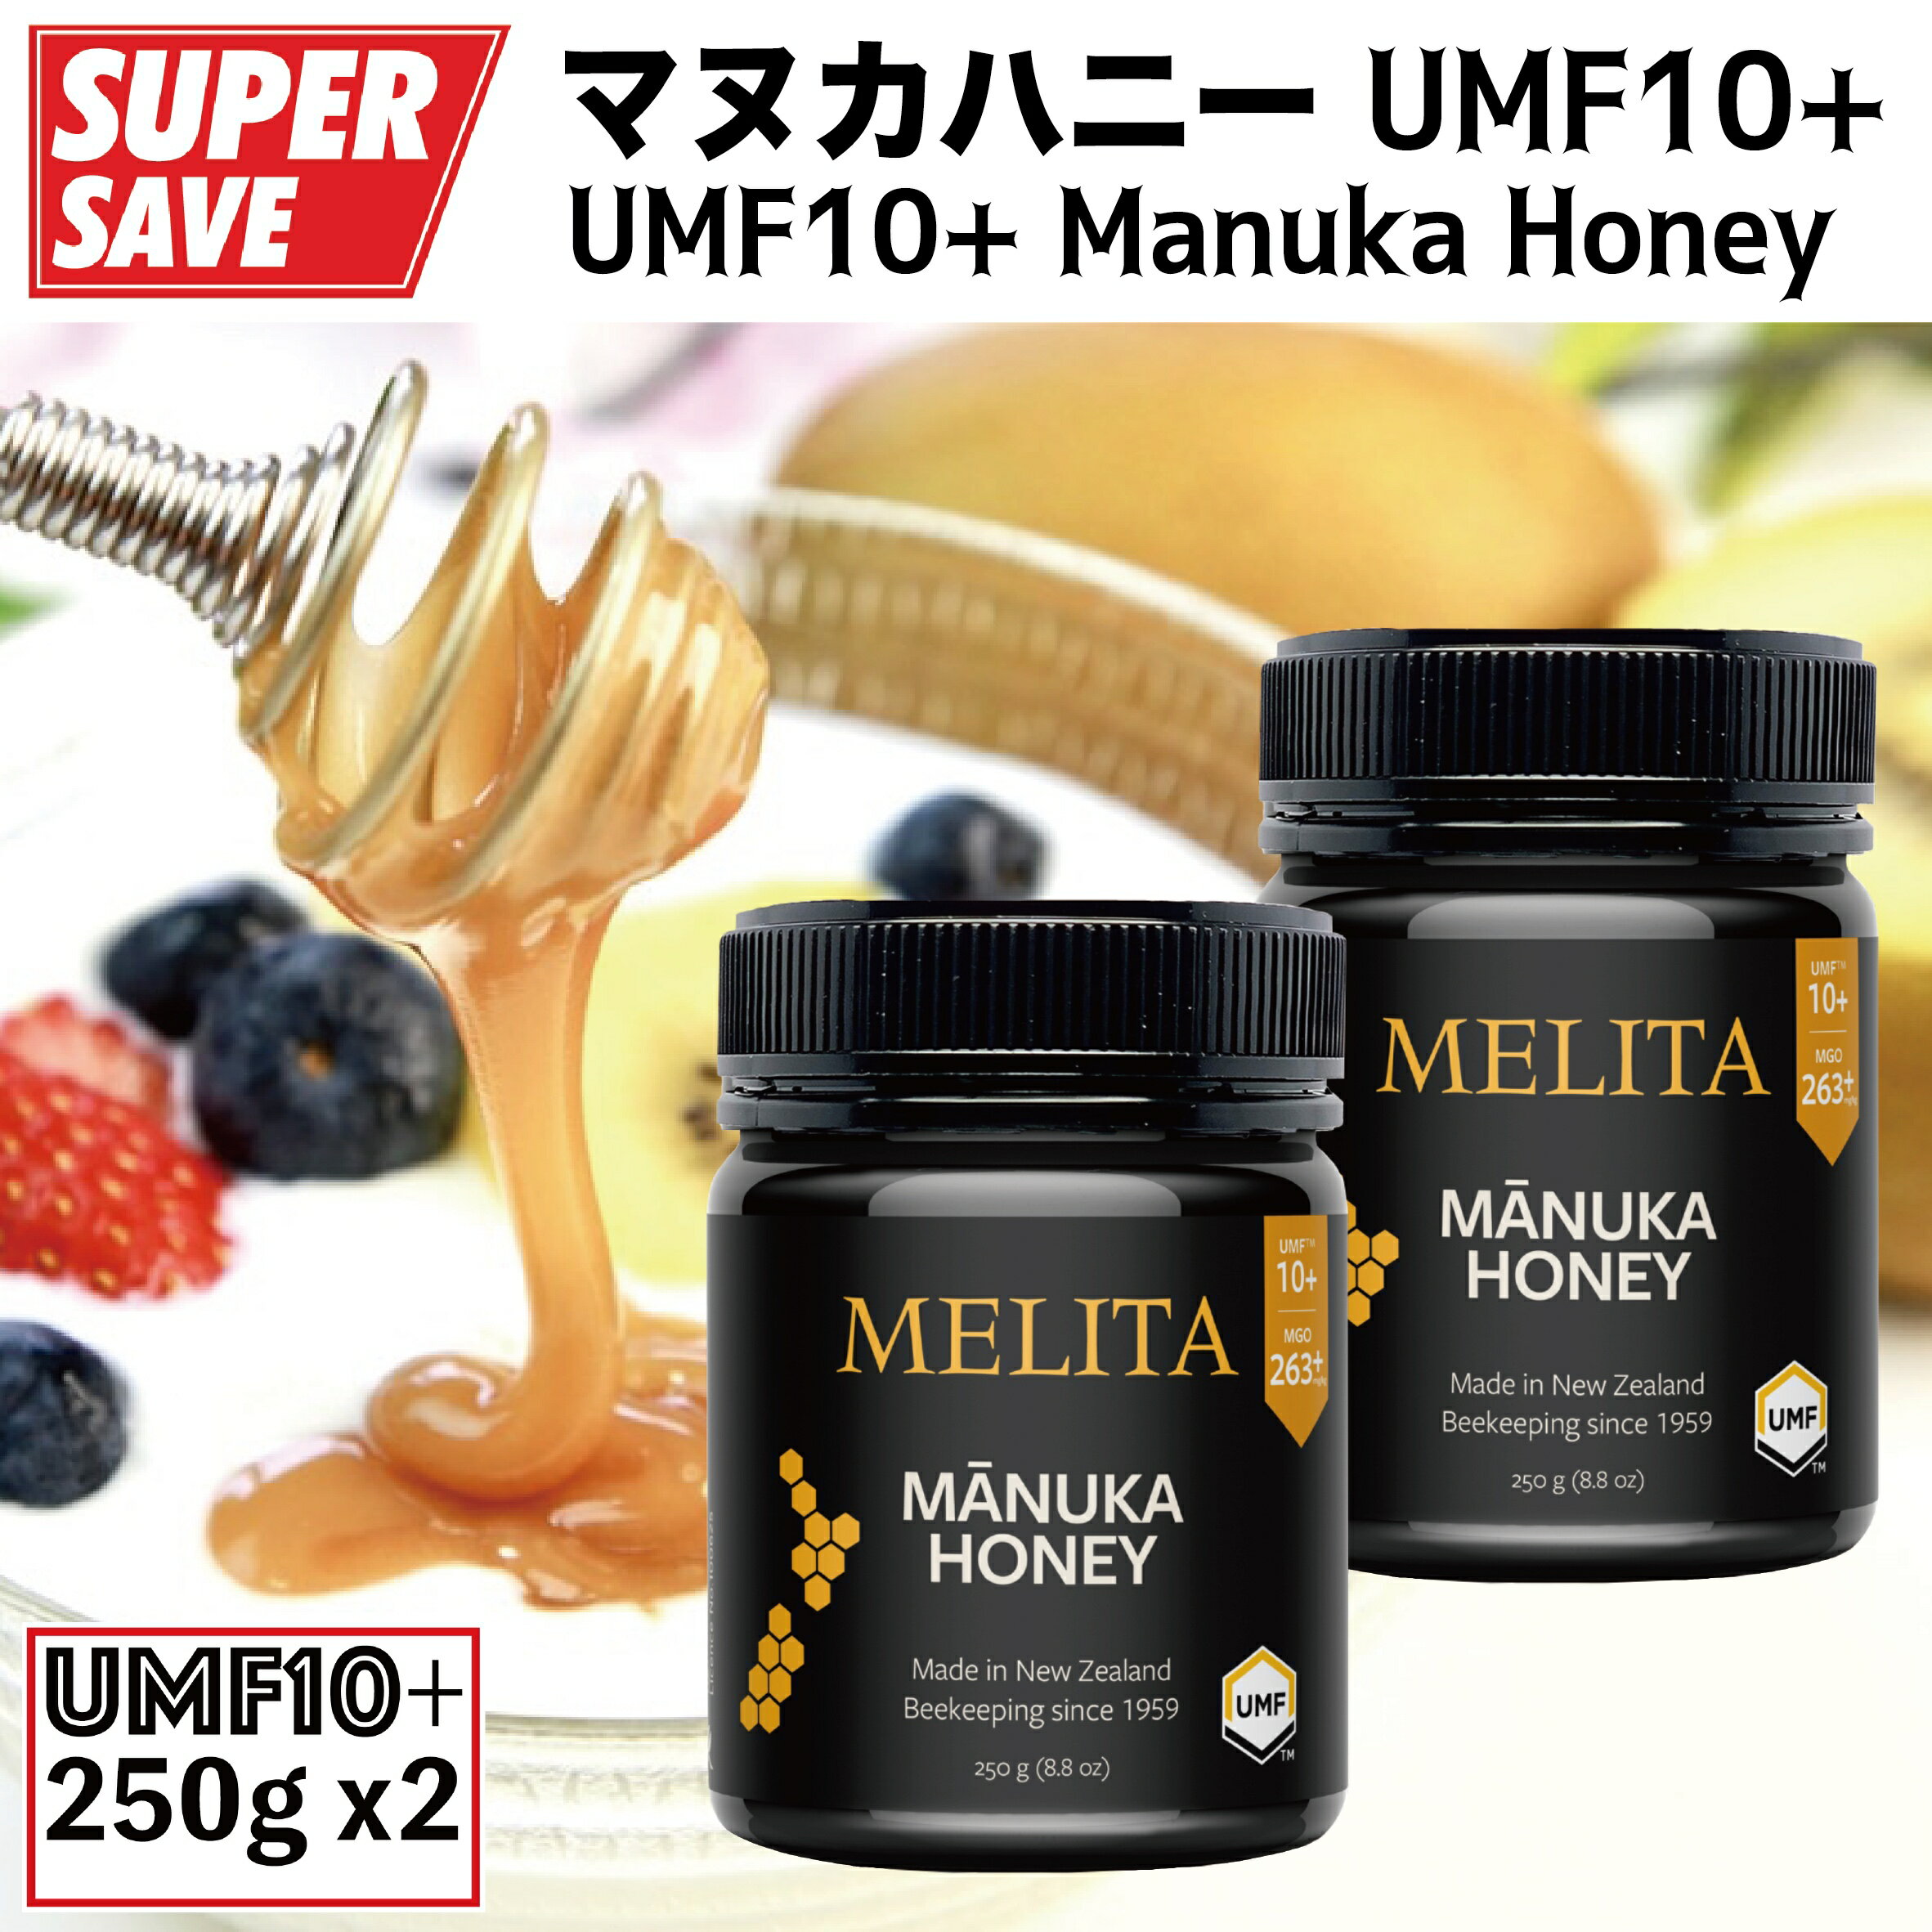 マヌカハニー250g X 2本セット『UMF協会認定UMF10+』Manuka Honey UMF10+ 250g X 2PCS